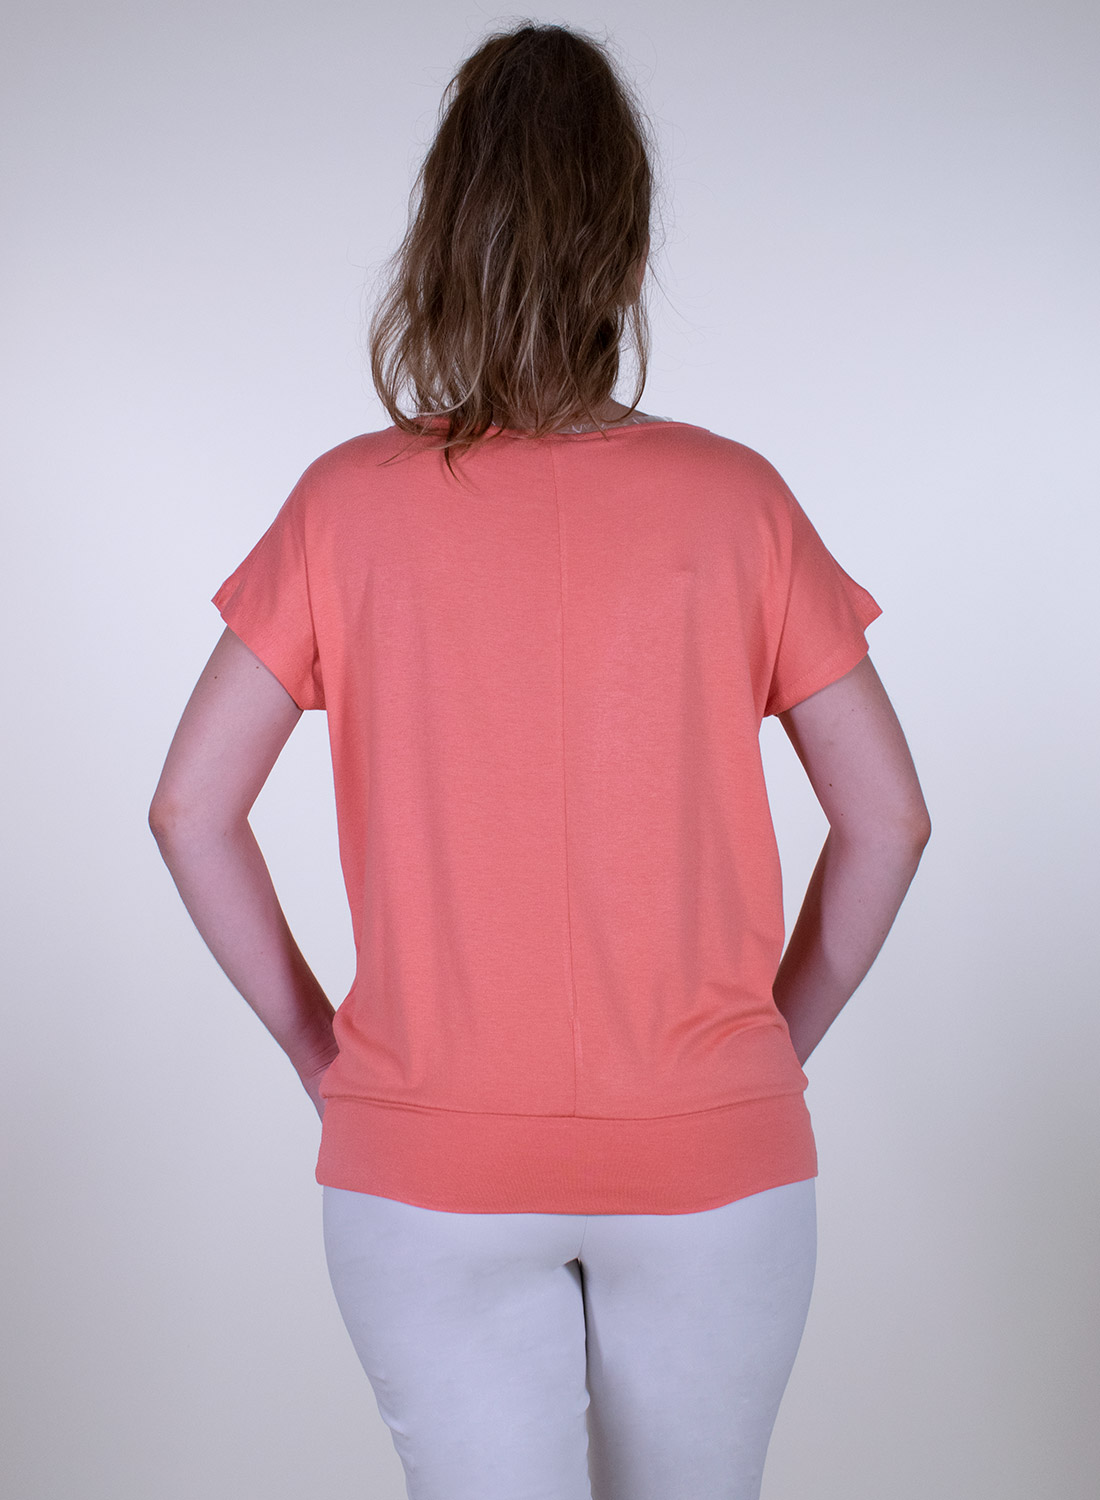 Κοντομάνικη μπλούζα σε φωτεινό χρώμα